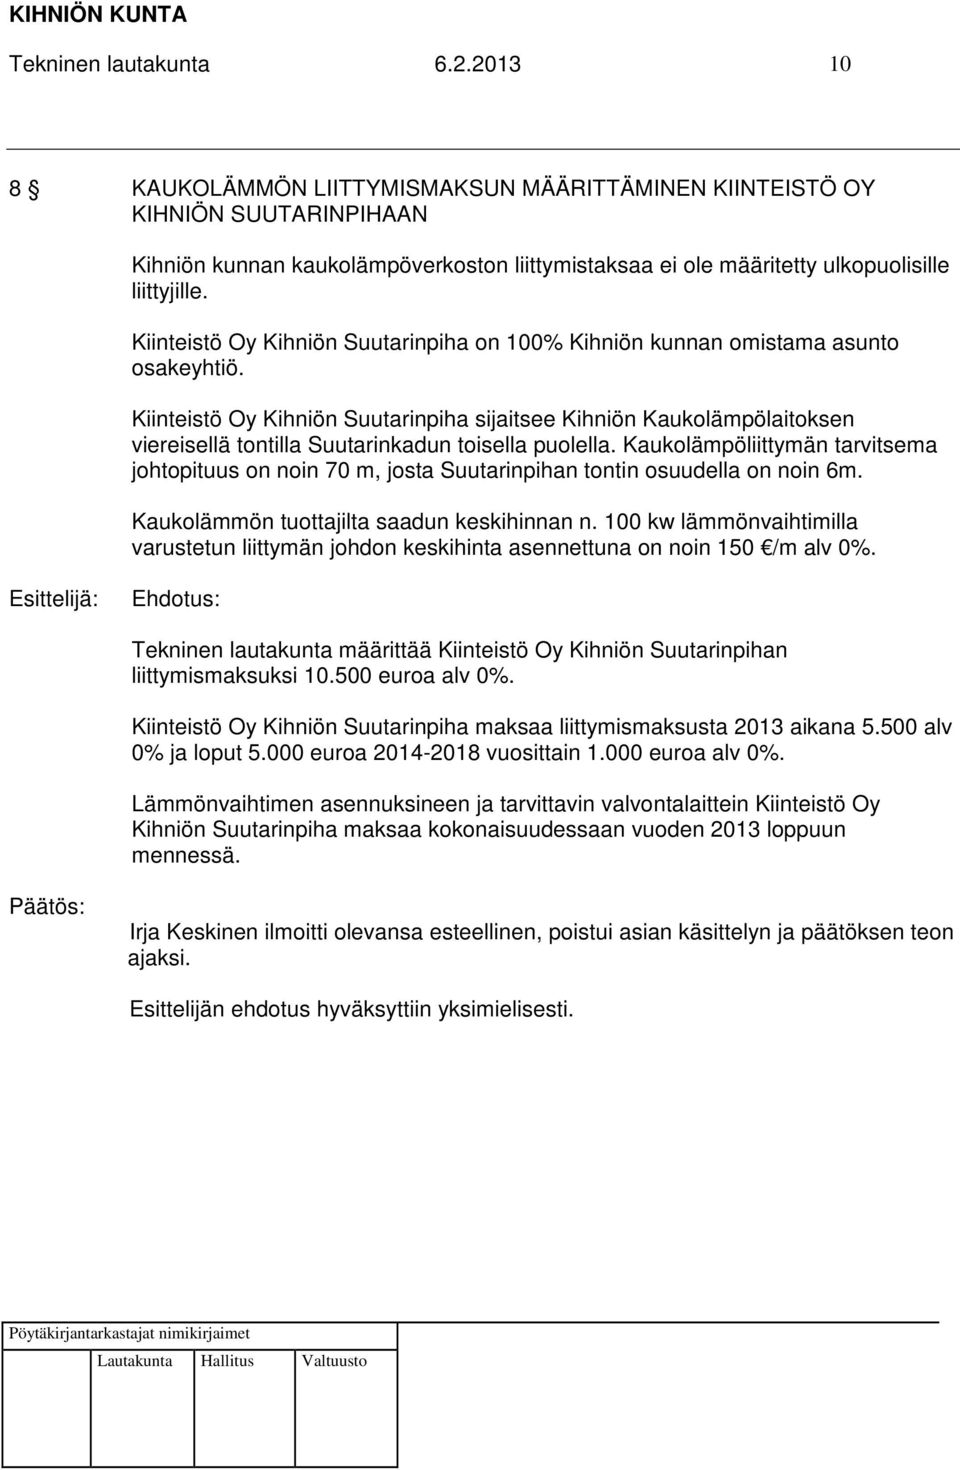 Kiinteistö Oy Kihniön Suutarinpiha on 100% Kihniön kunnan omistama asunto osakeyhtiö.